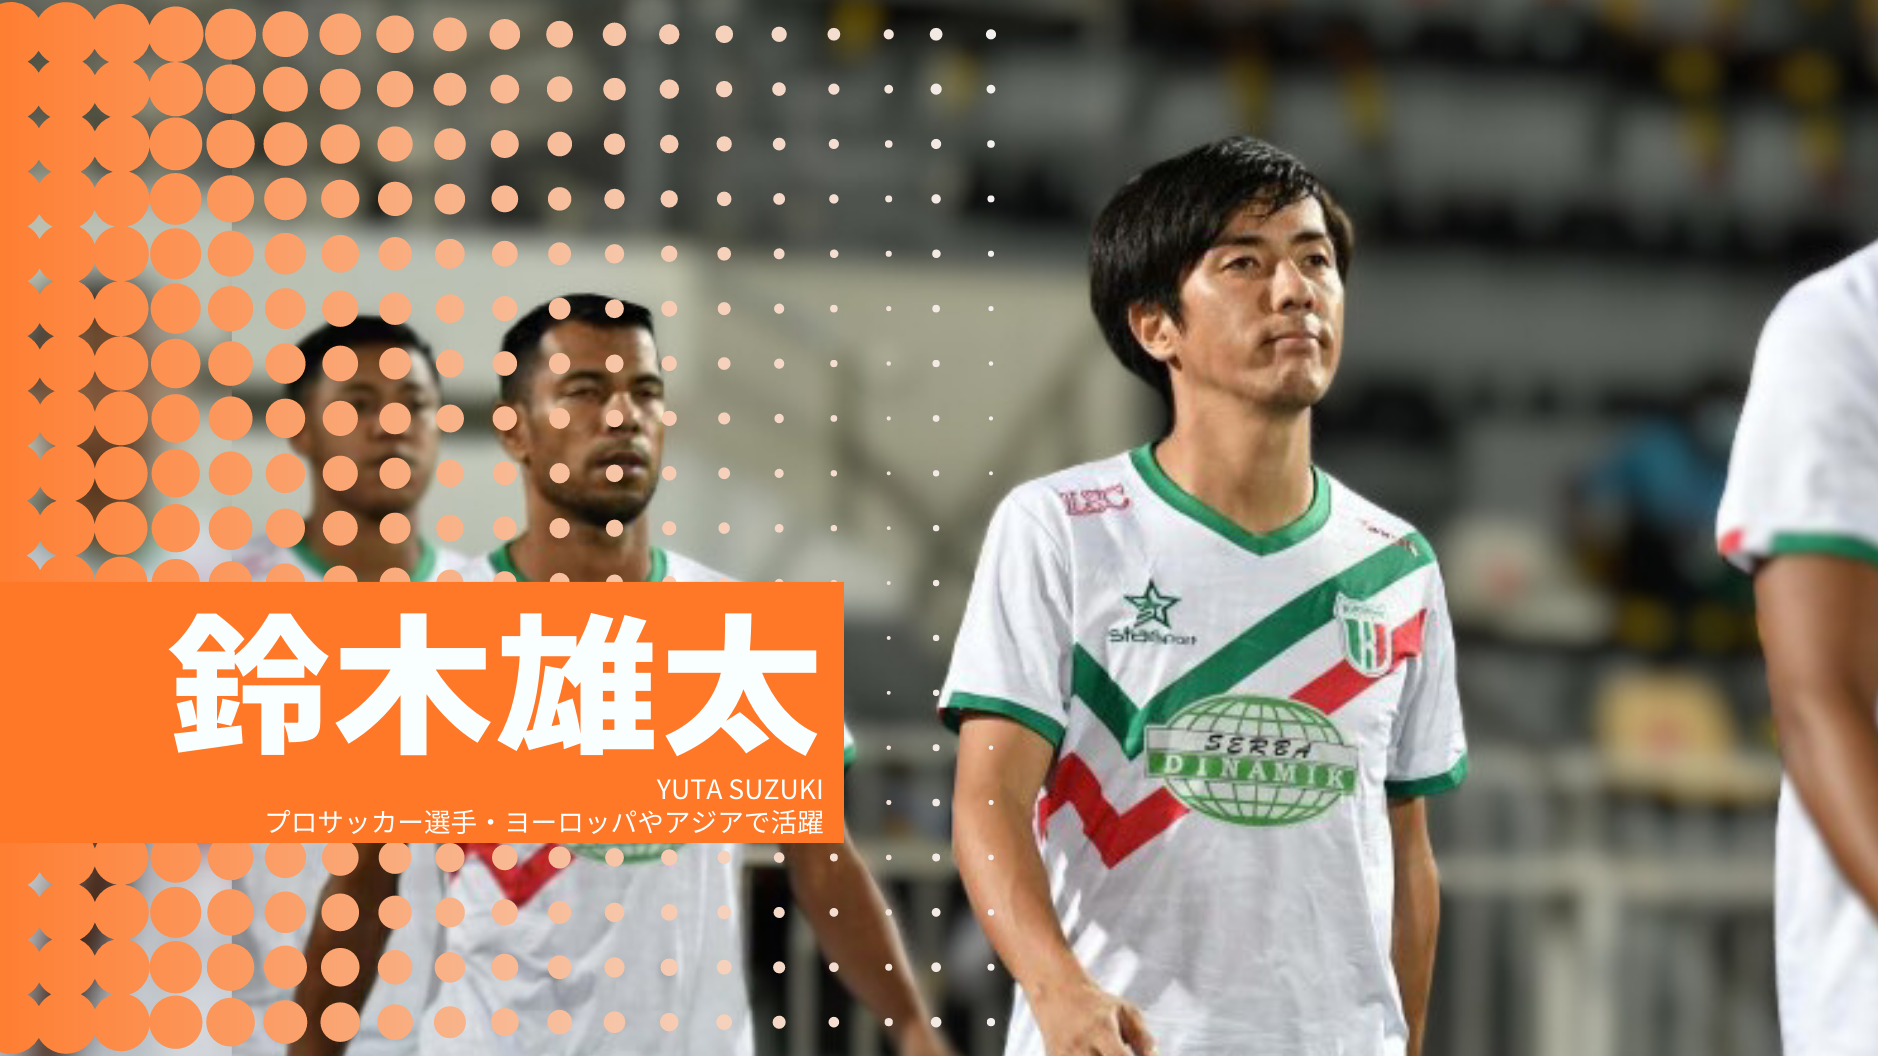 鈴木雄太
YUTA SUZUKI
プロサッカー選手・ヨーロッパやアジアで活躍